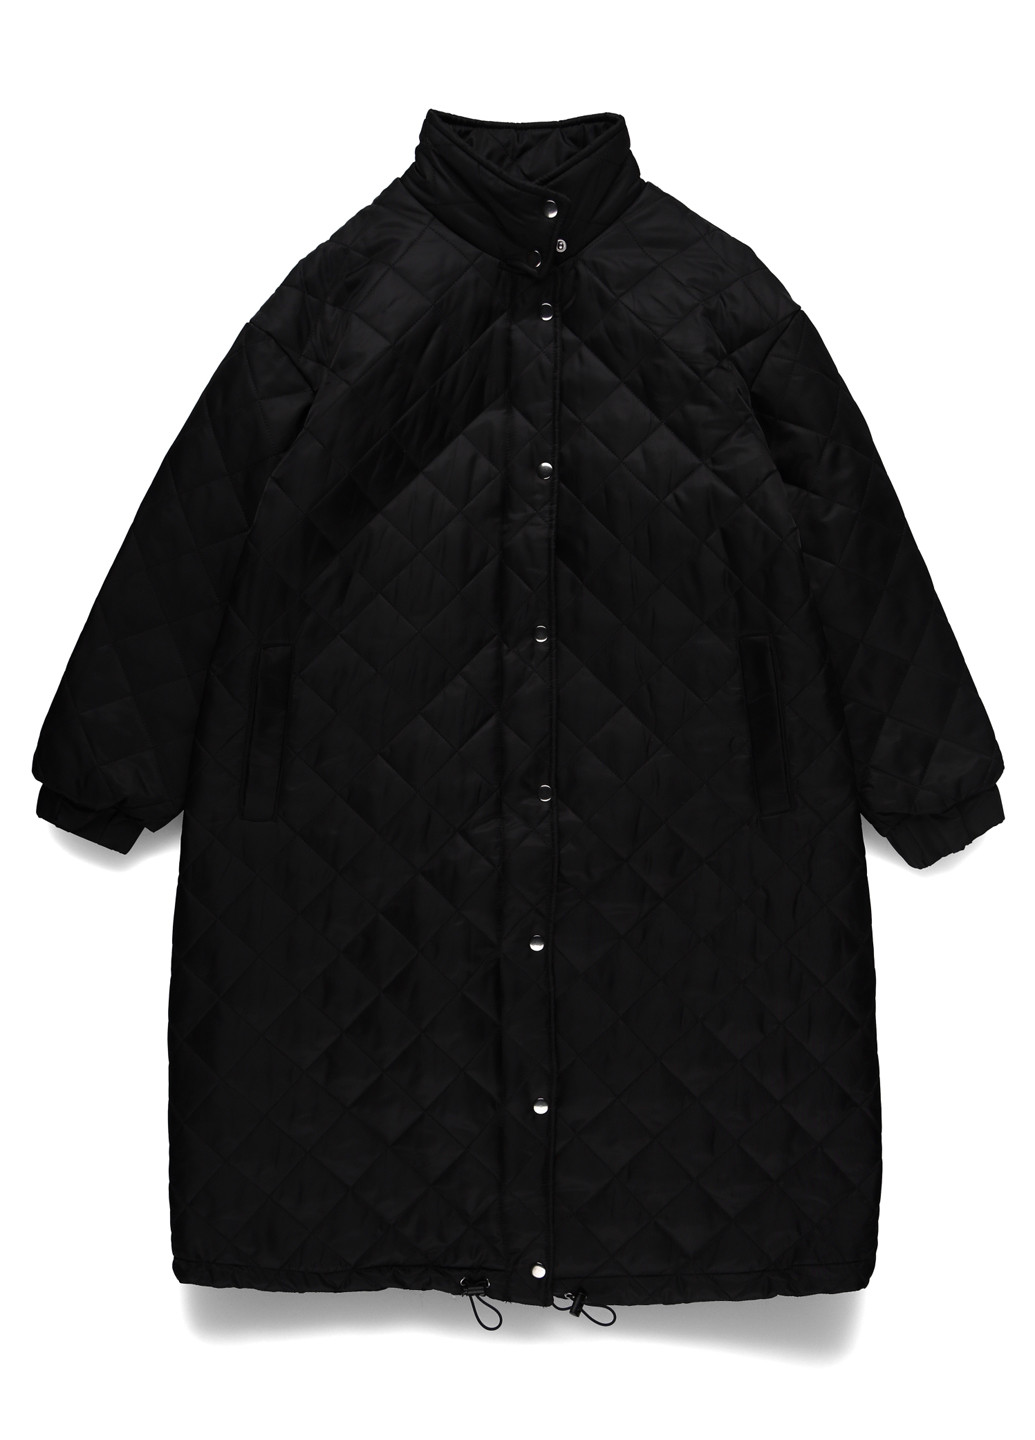 Черная демисезонная куртка куртка-пальто Missguided